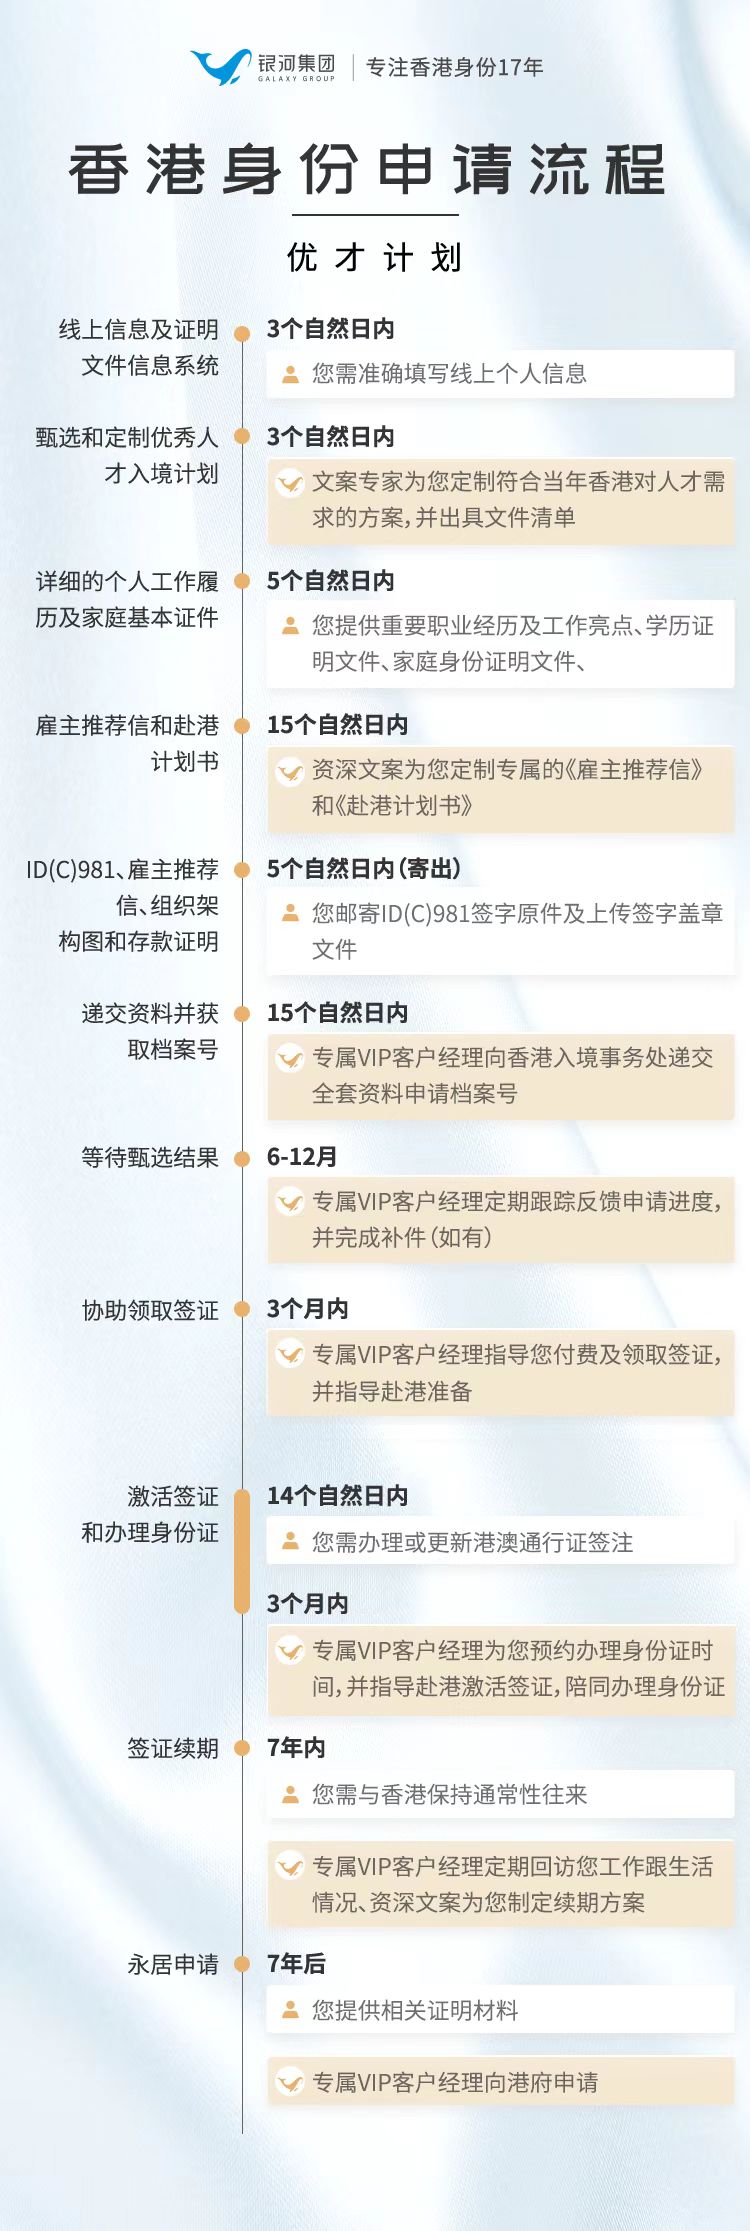 香港优才计划最新政策+申请条件+申请流程+续签拿永居+避坑！